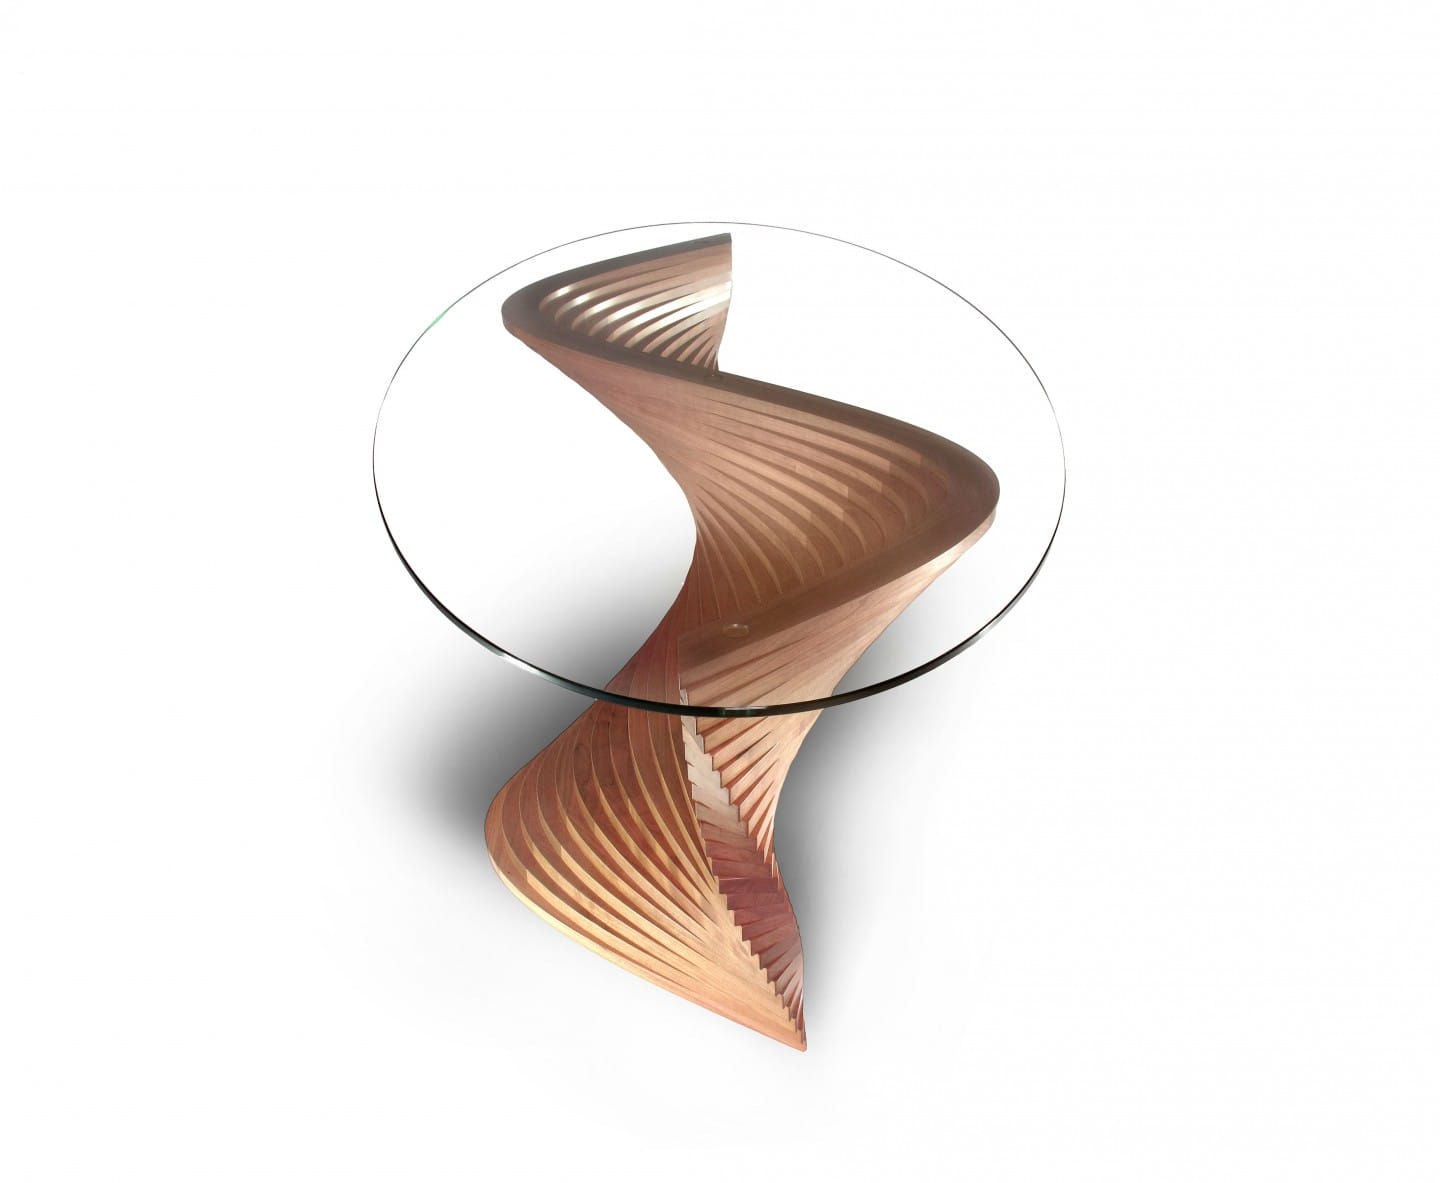 Sidewinder II sculptural coffee table